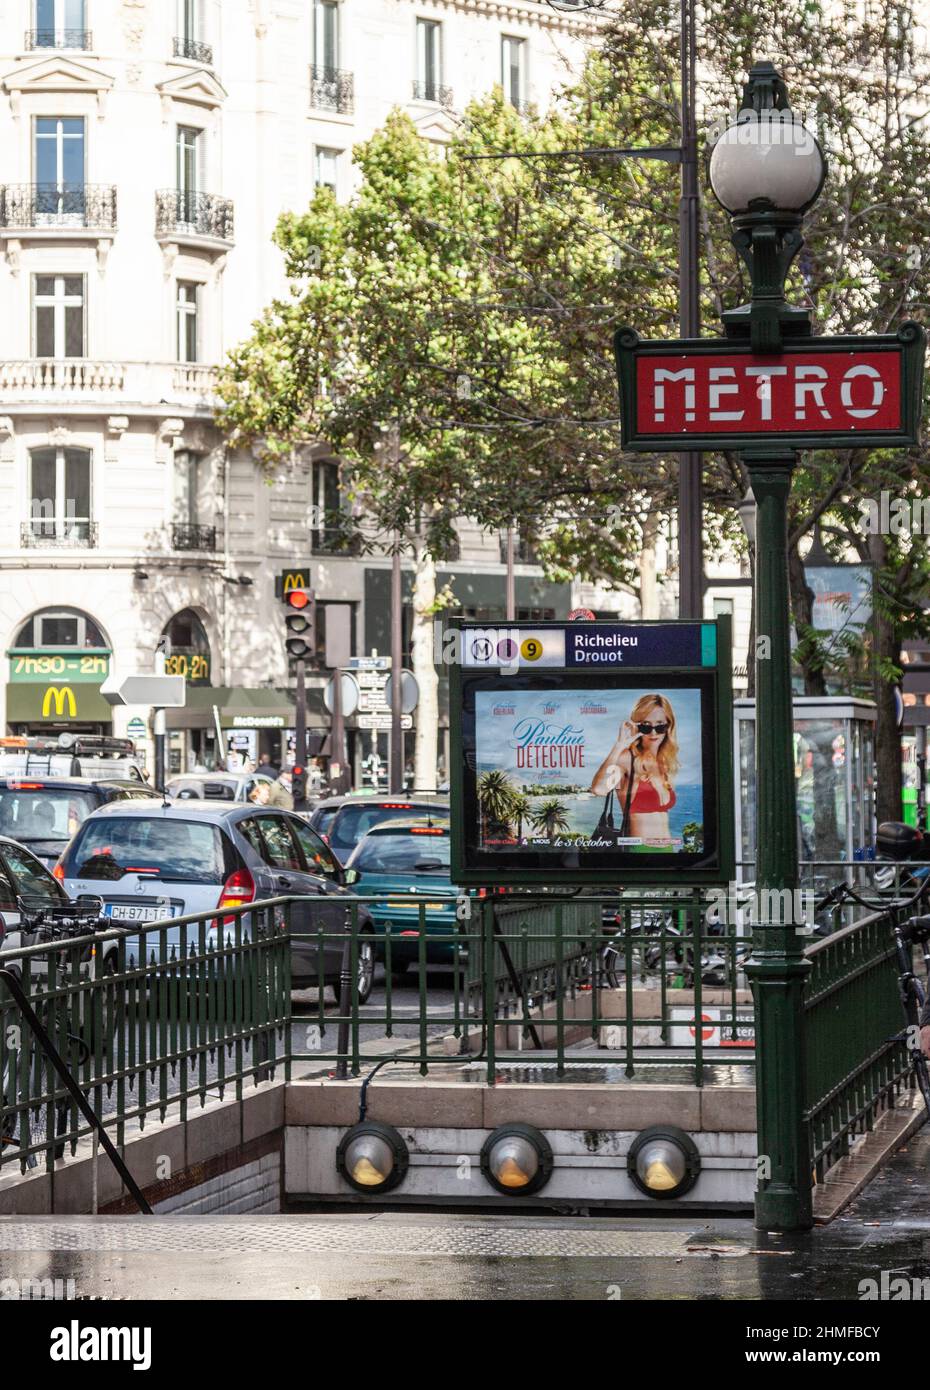 Jaurès Dervaux lámpara de pie de la señal de metro de estilo frente a la entrada de la estación de metro Richelieu Drouot en el centro de París, Francia. Foto de stock